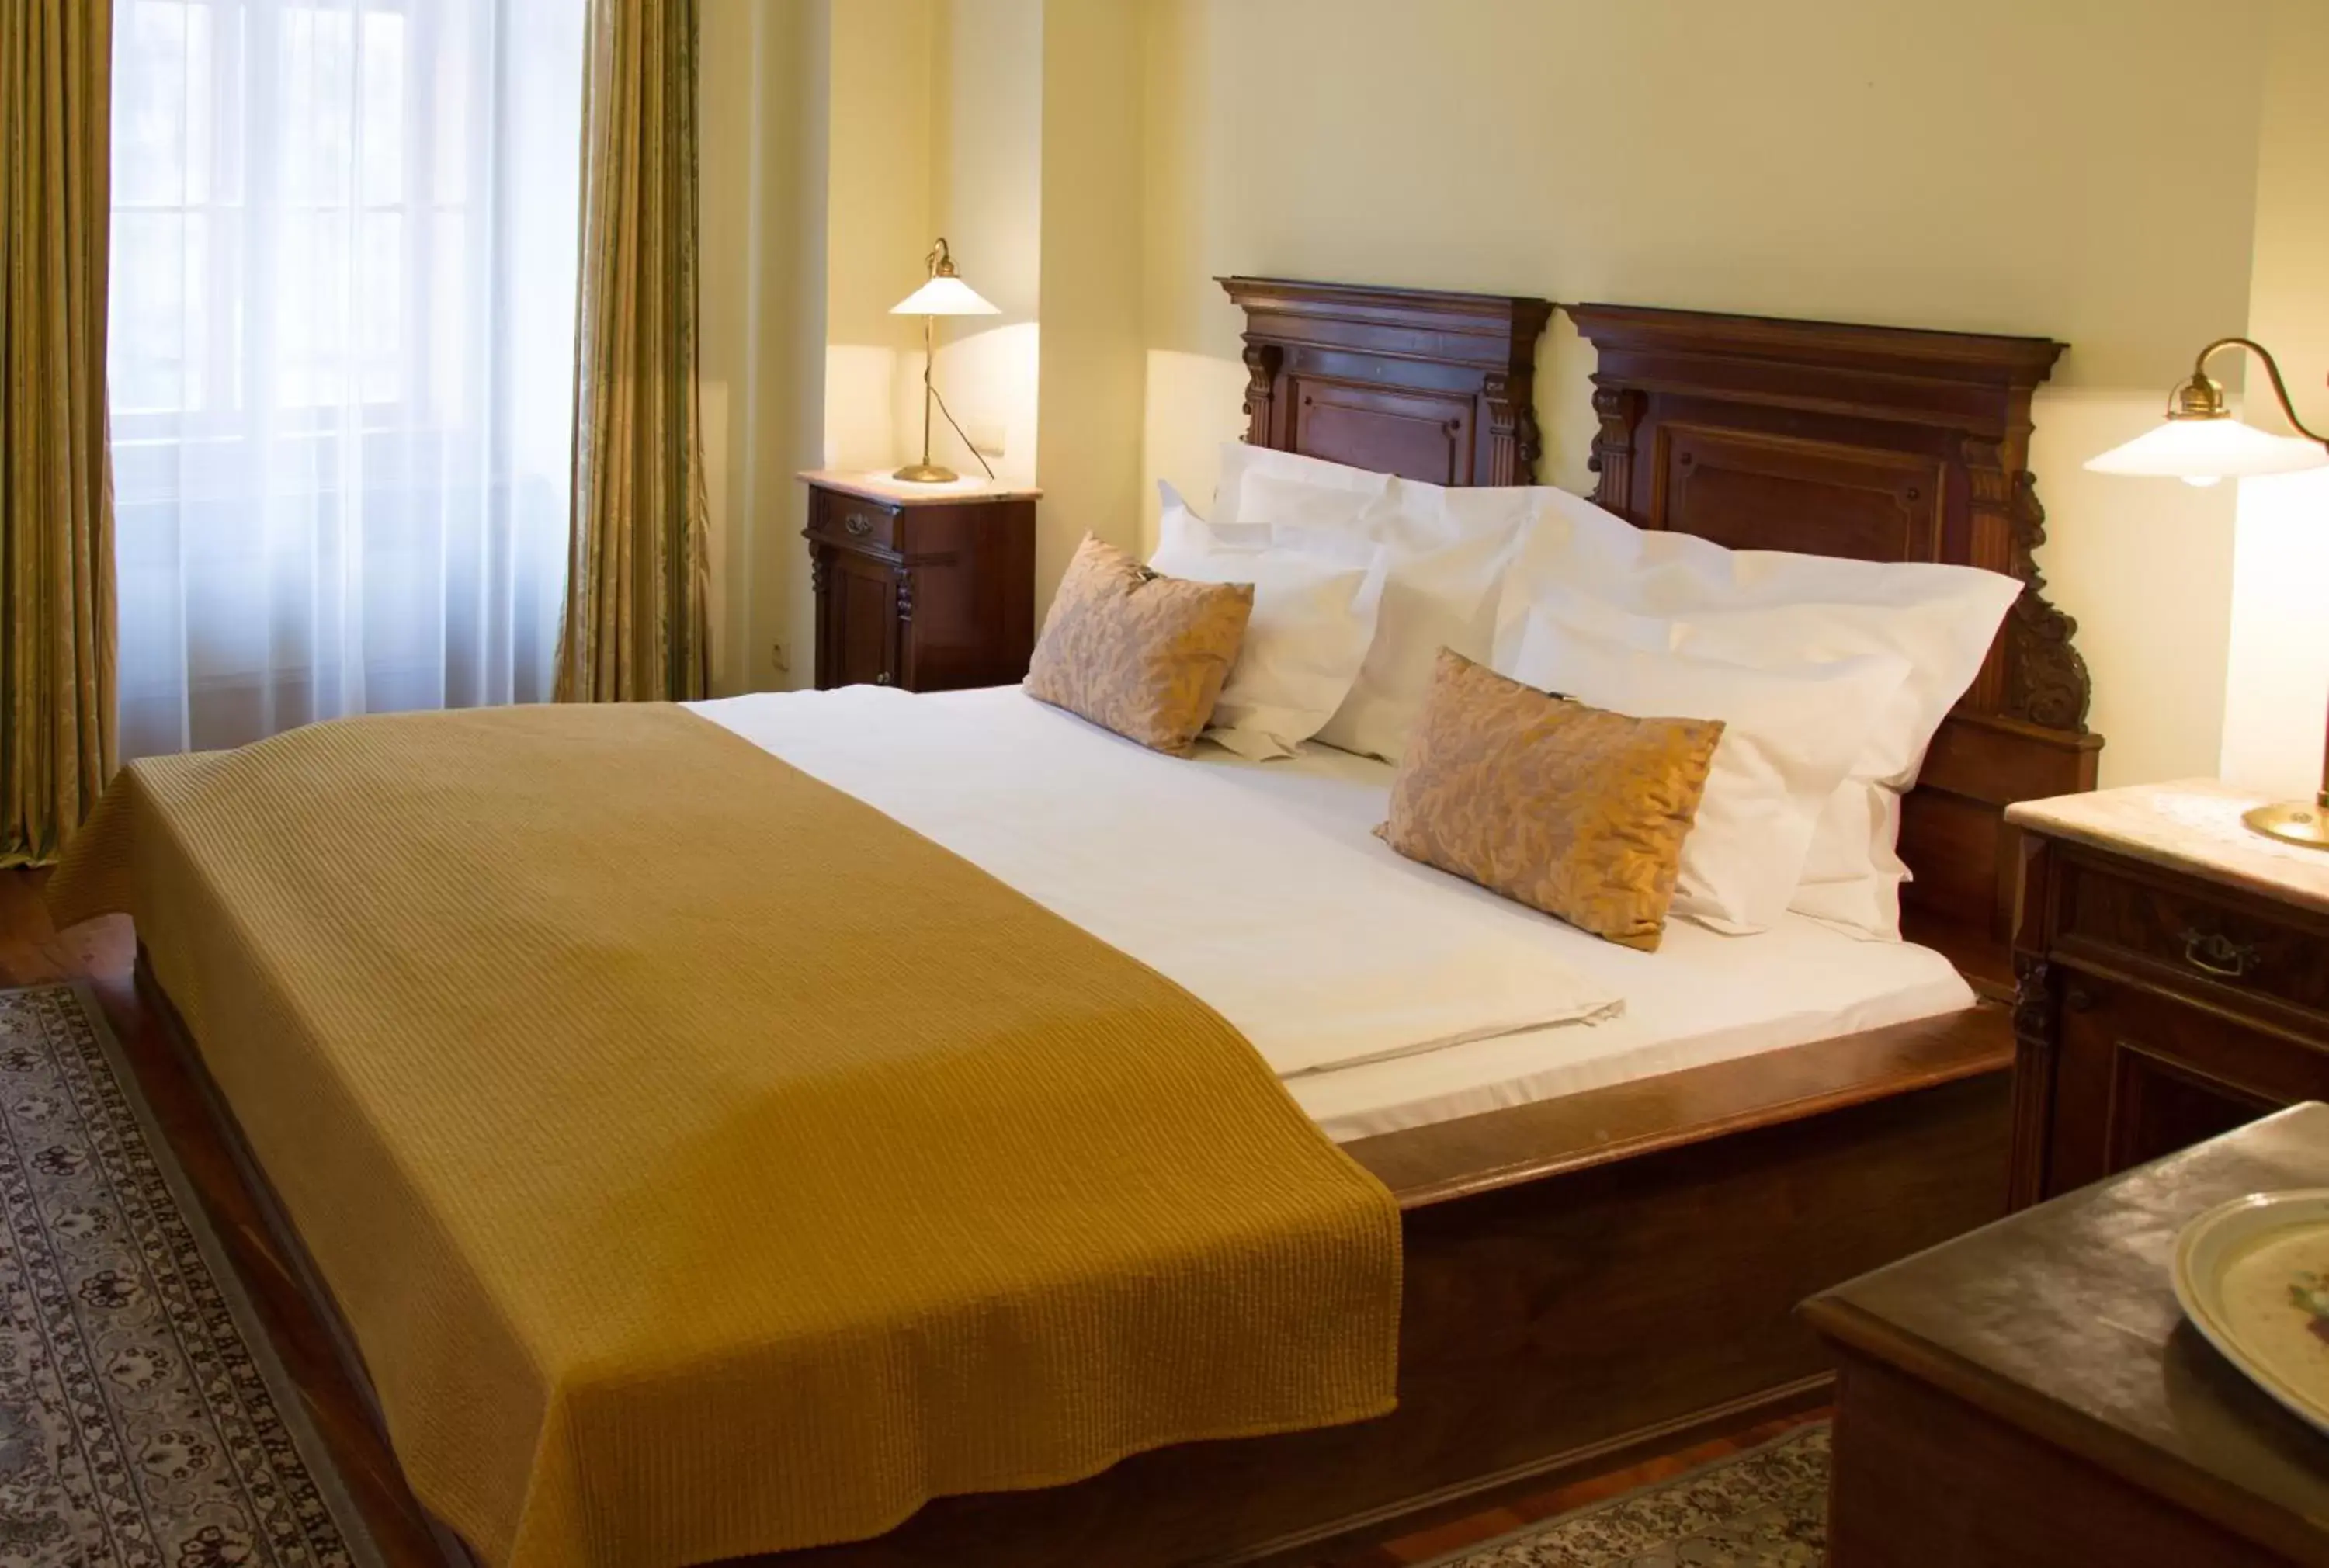 Bedroom, Room Photo in Grand Hotel Praha